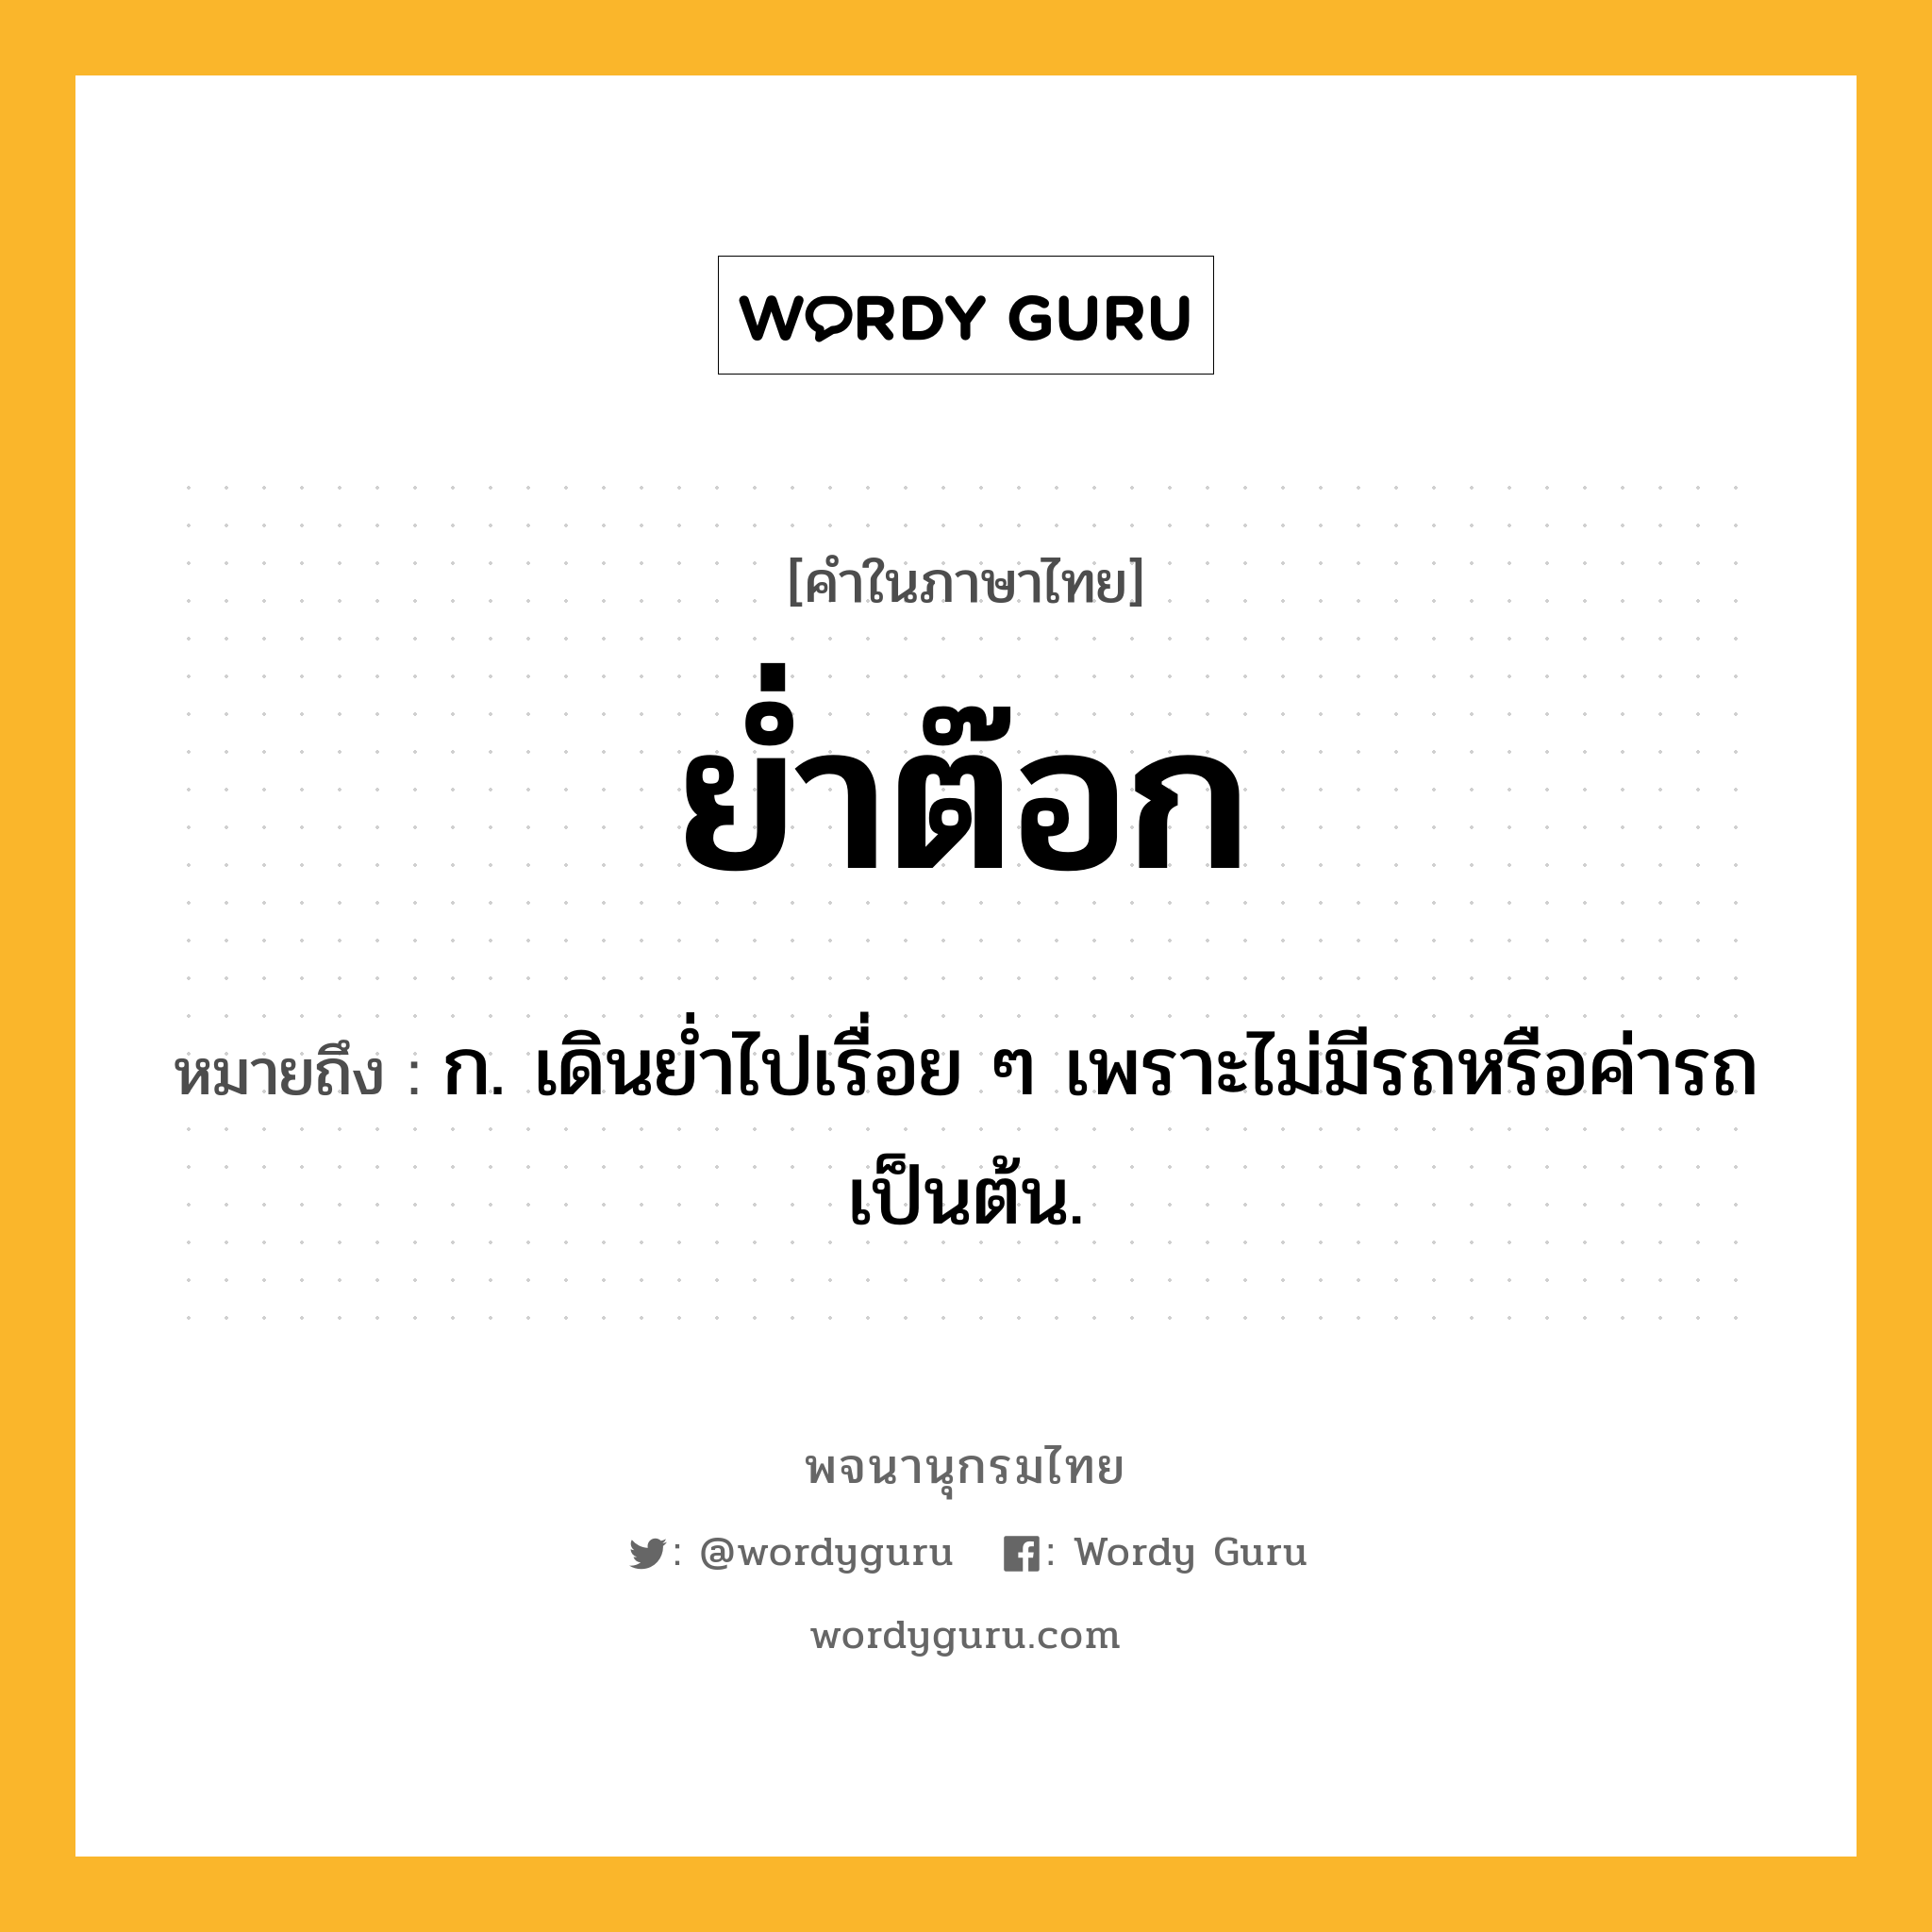 ย่ำต๊อก ความหมาย หมายถึงอะไร?, คำในภาษาไทย ย่ำต๊อก หมายถึง ก. เดินย่ำไปเรื่อย ๆ เพราะไม่มีรถหรือค่ารถเป็นต้น.